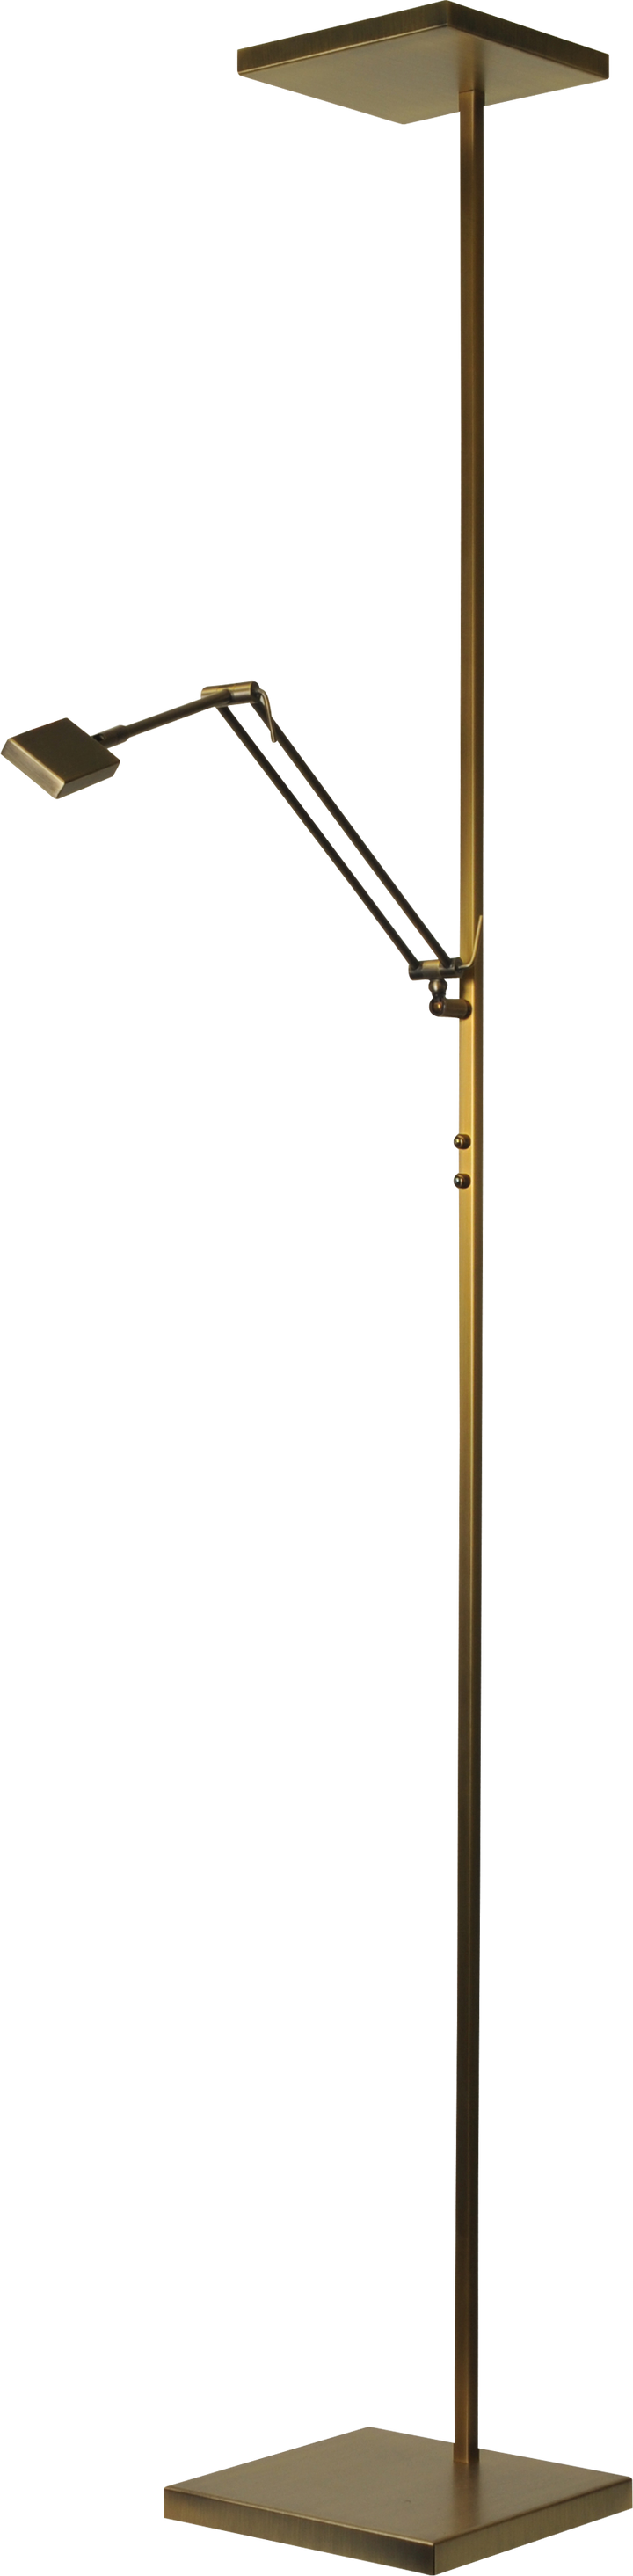 Vloerlamp Denia 1 LED Masterlight 1881-01